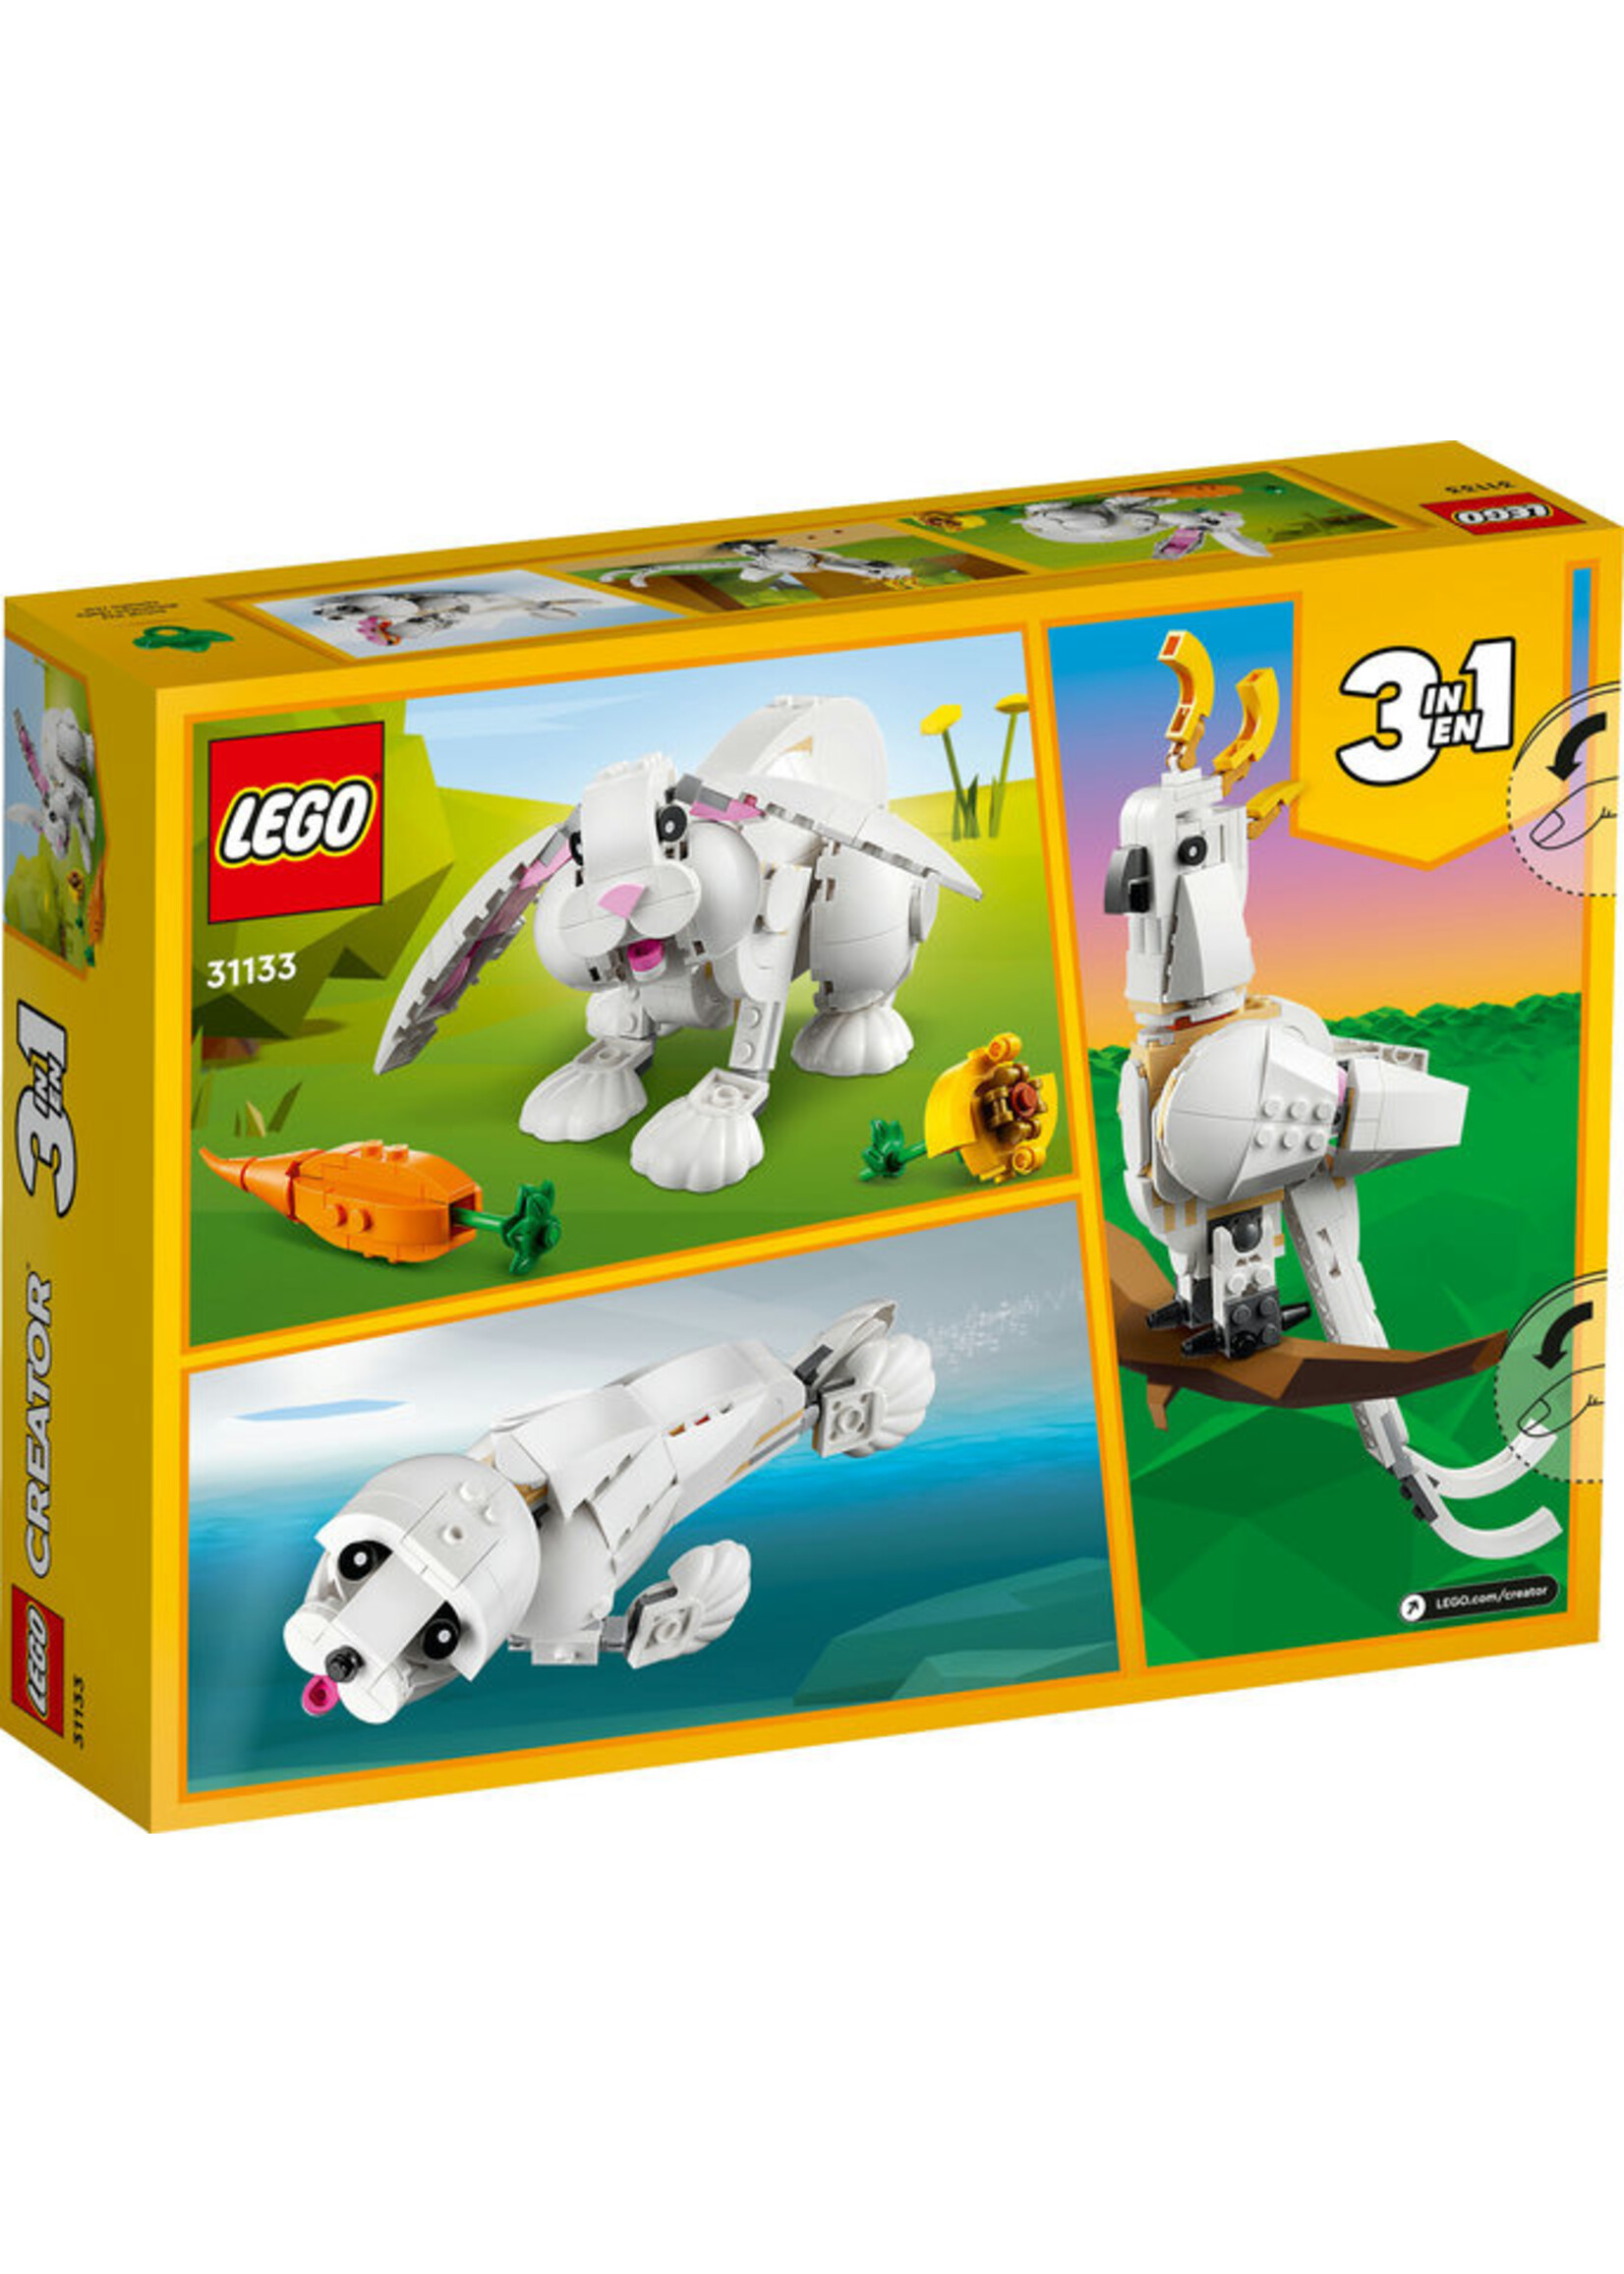 LEGO 31133 - White Rabbit